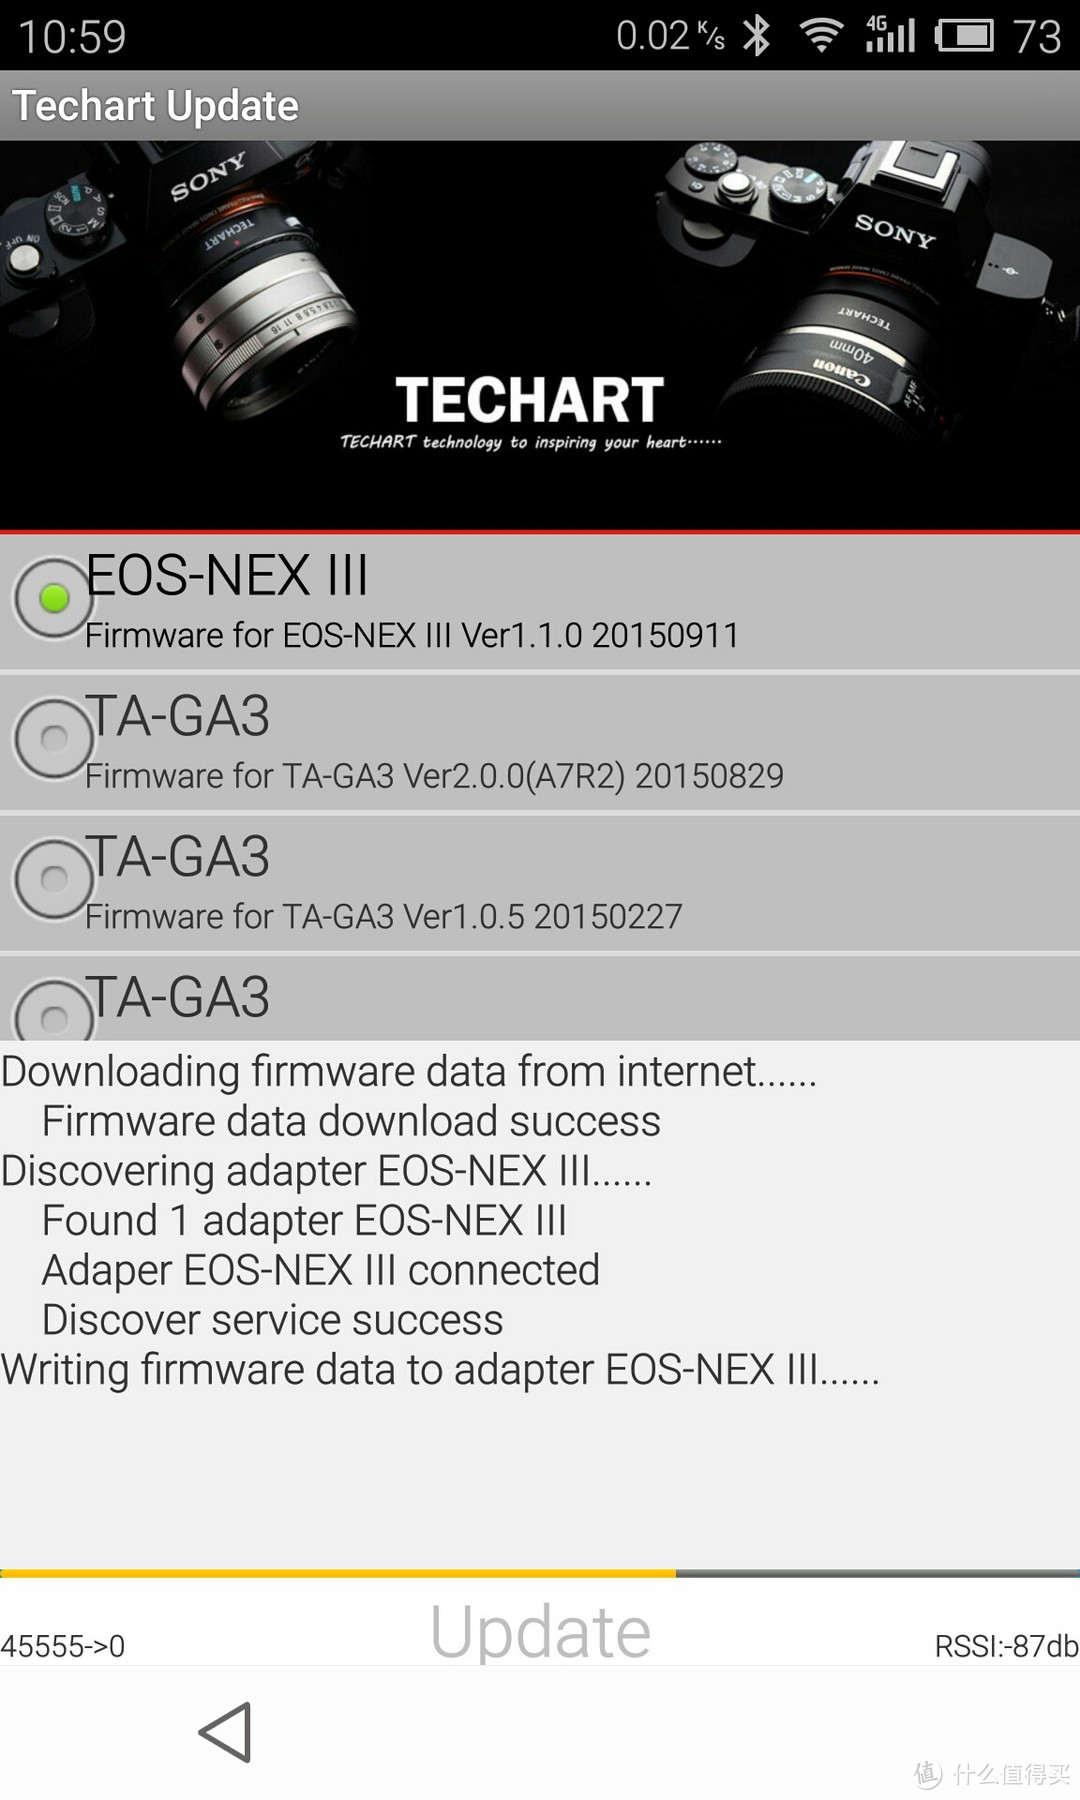 全新双模三代 TECHART EOS-NEX 全幅自动对焦接环 开箱测试